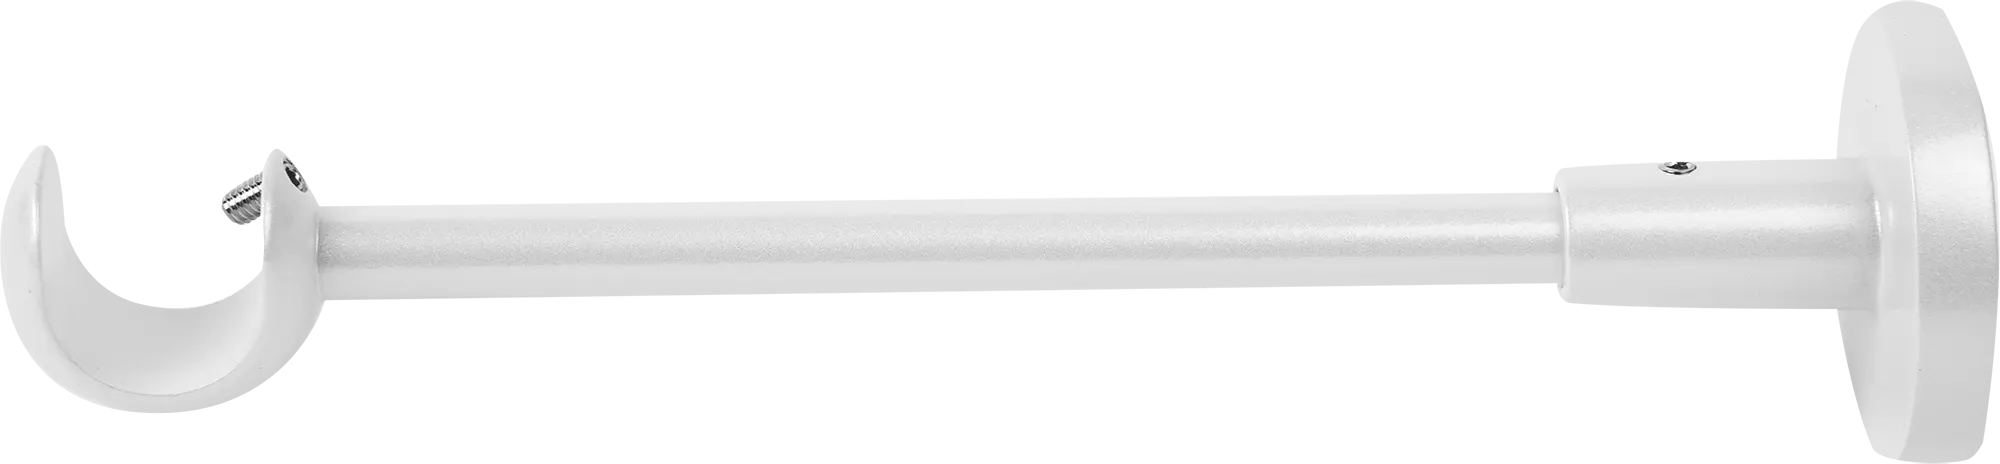 Держатель однорядный открытый 2 см цвет жемчуг держатель потолочный 2 см жемчуг